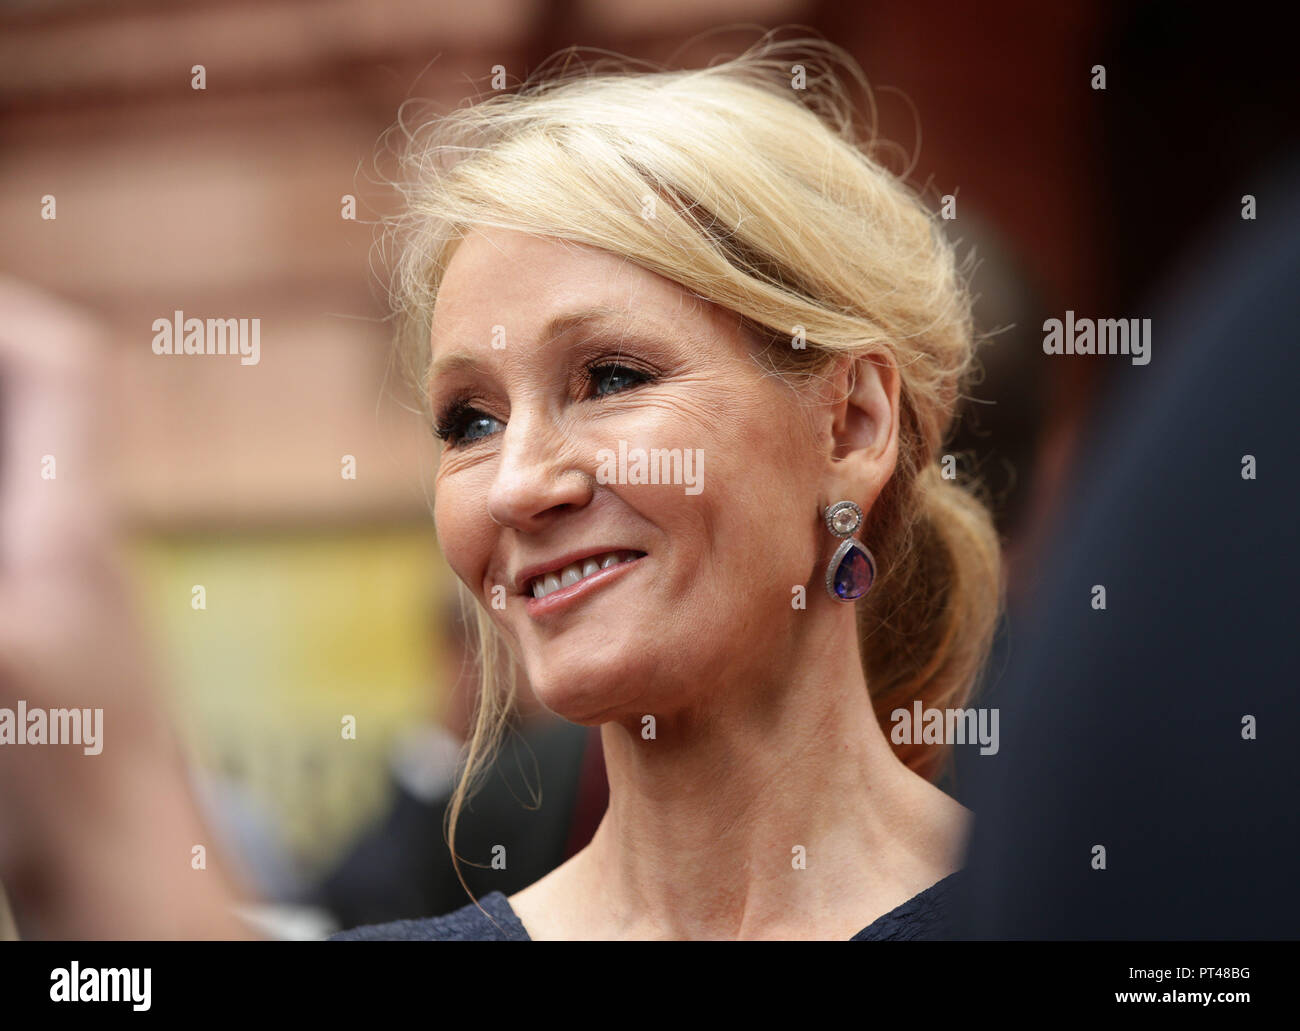 Embargado SÁBADO 6 DE OCTUBRE DE 1300 Foto de archivo de fecha 30/07/16 de JK Rowling ha dicho que ella disfruta de vivir una vida "muy desapercibido" y a menudo pueden obtener sin ser reconocidos. Foto de stock